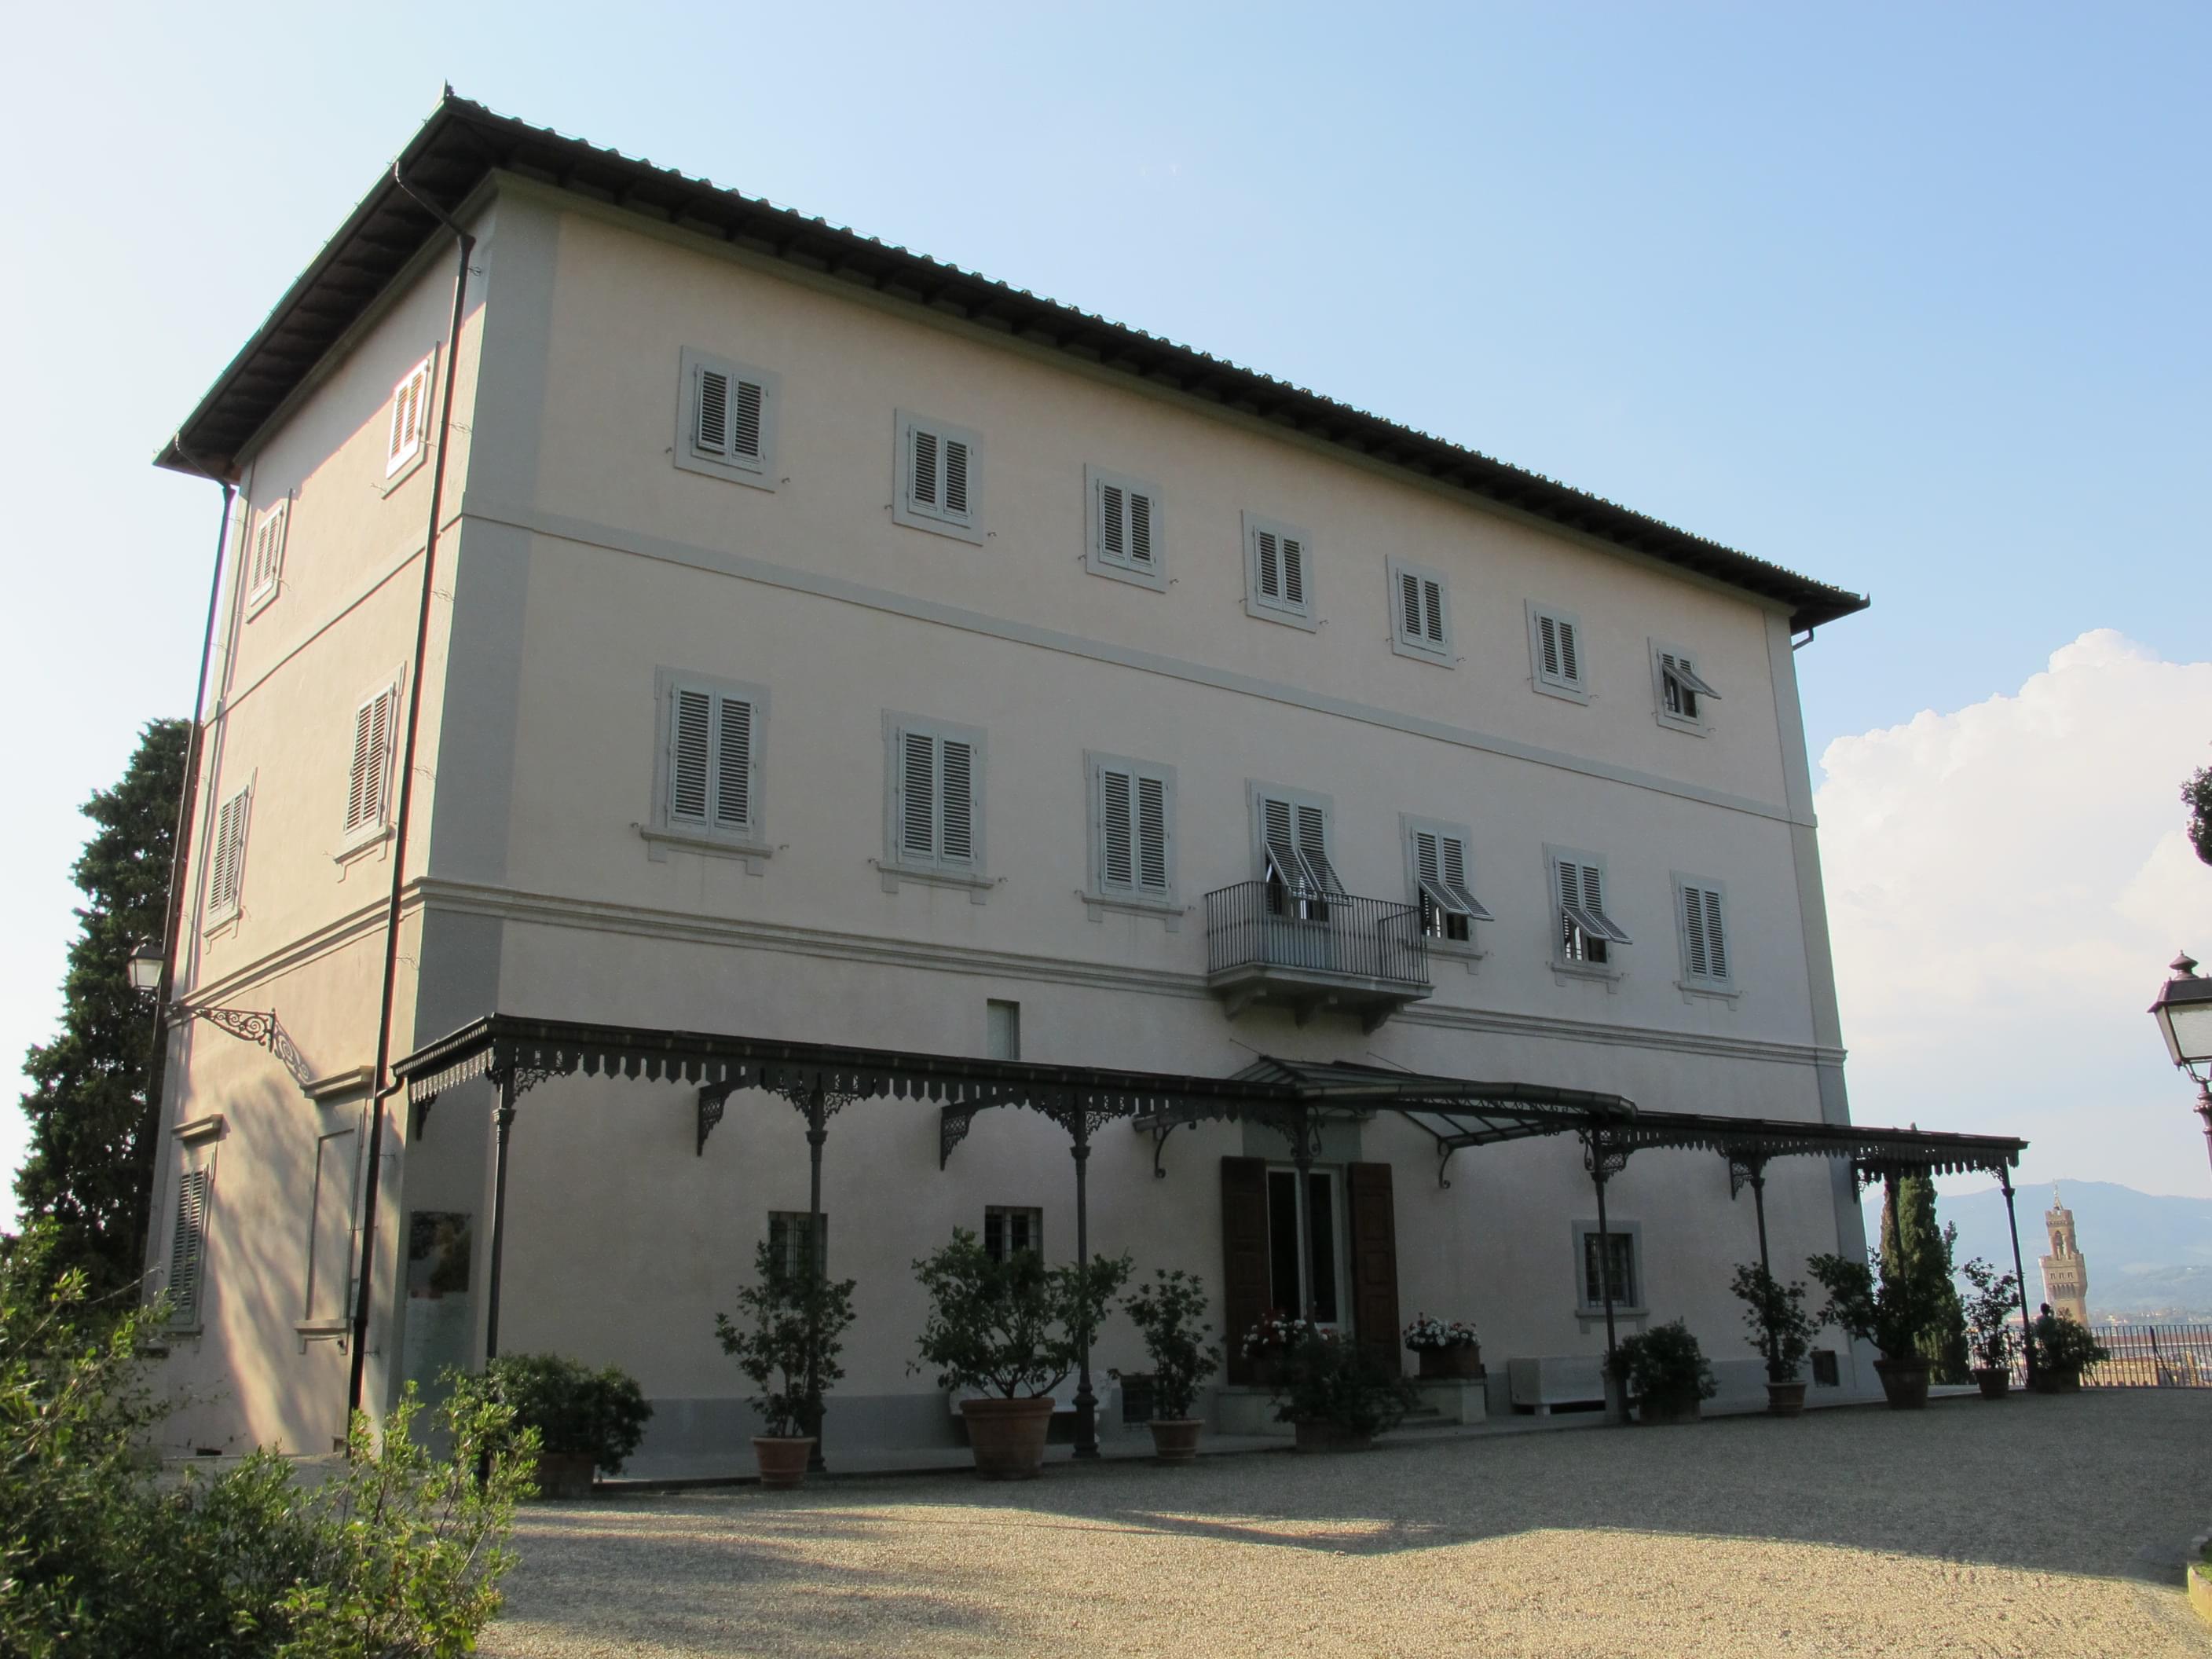 Villa Bardini History